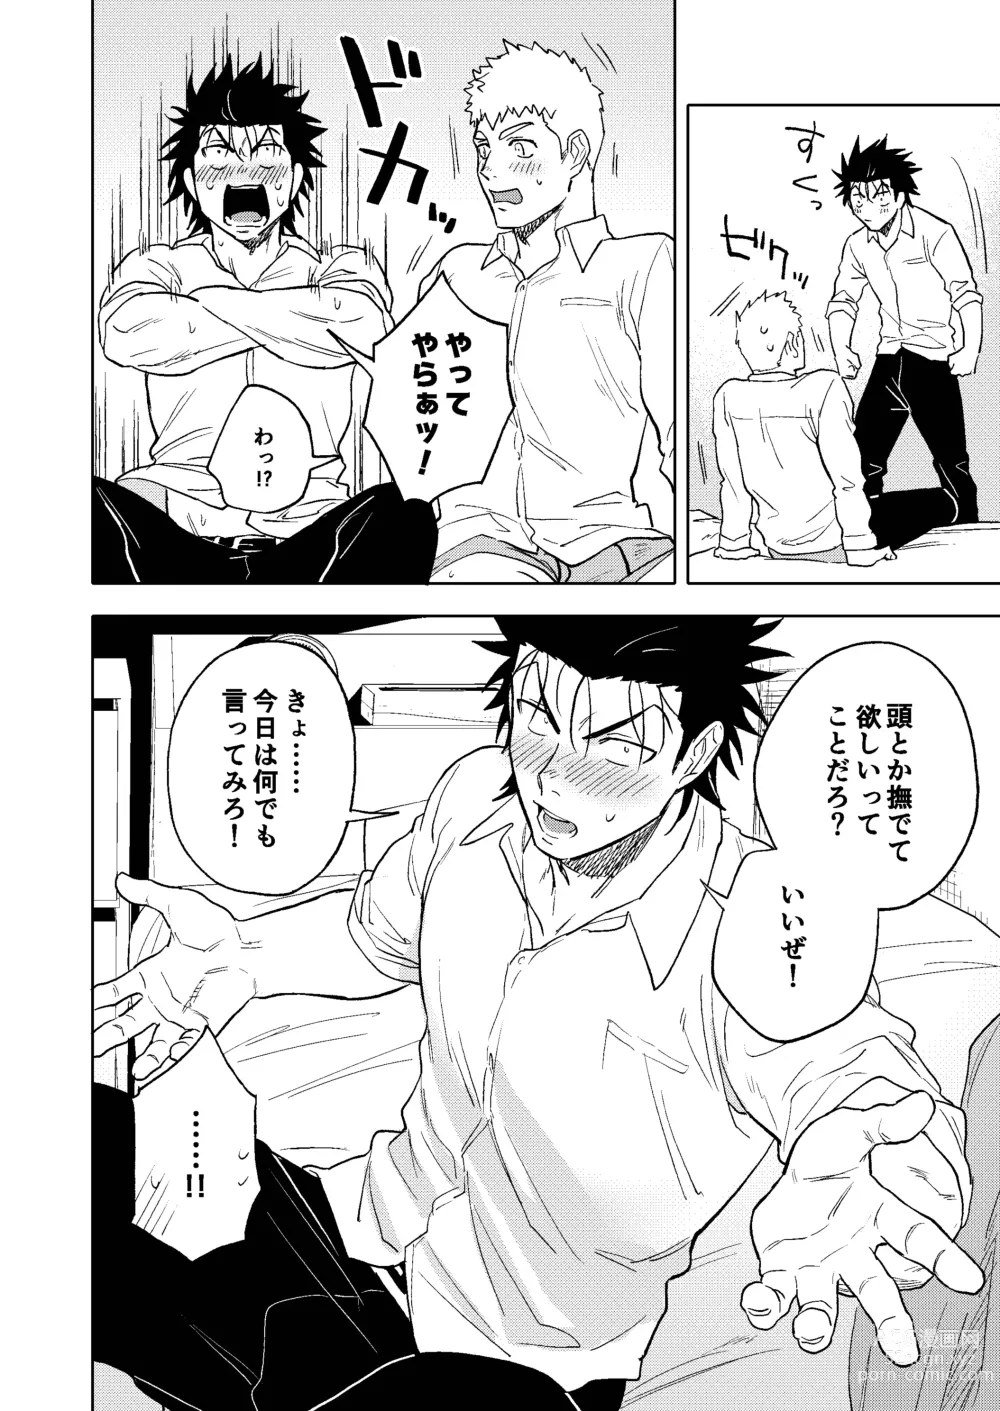 Page 23 of doujinshi Dainarishounari 2